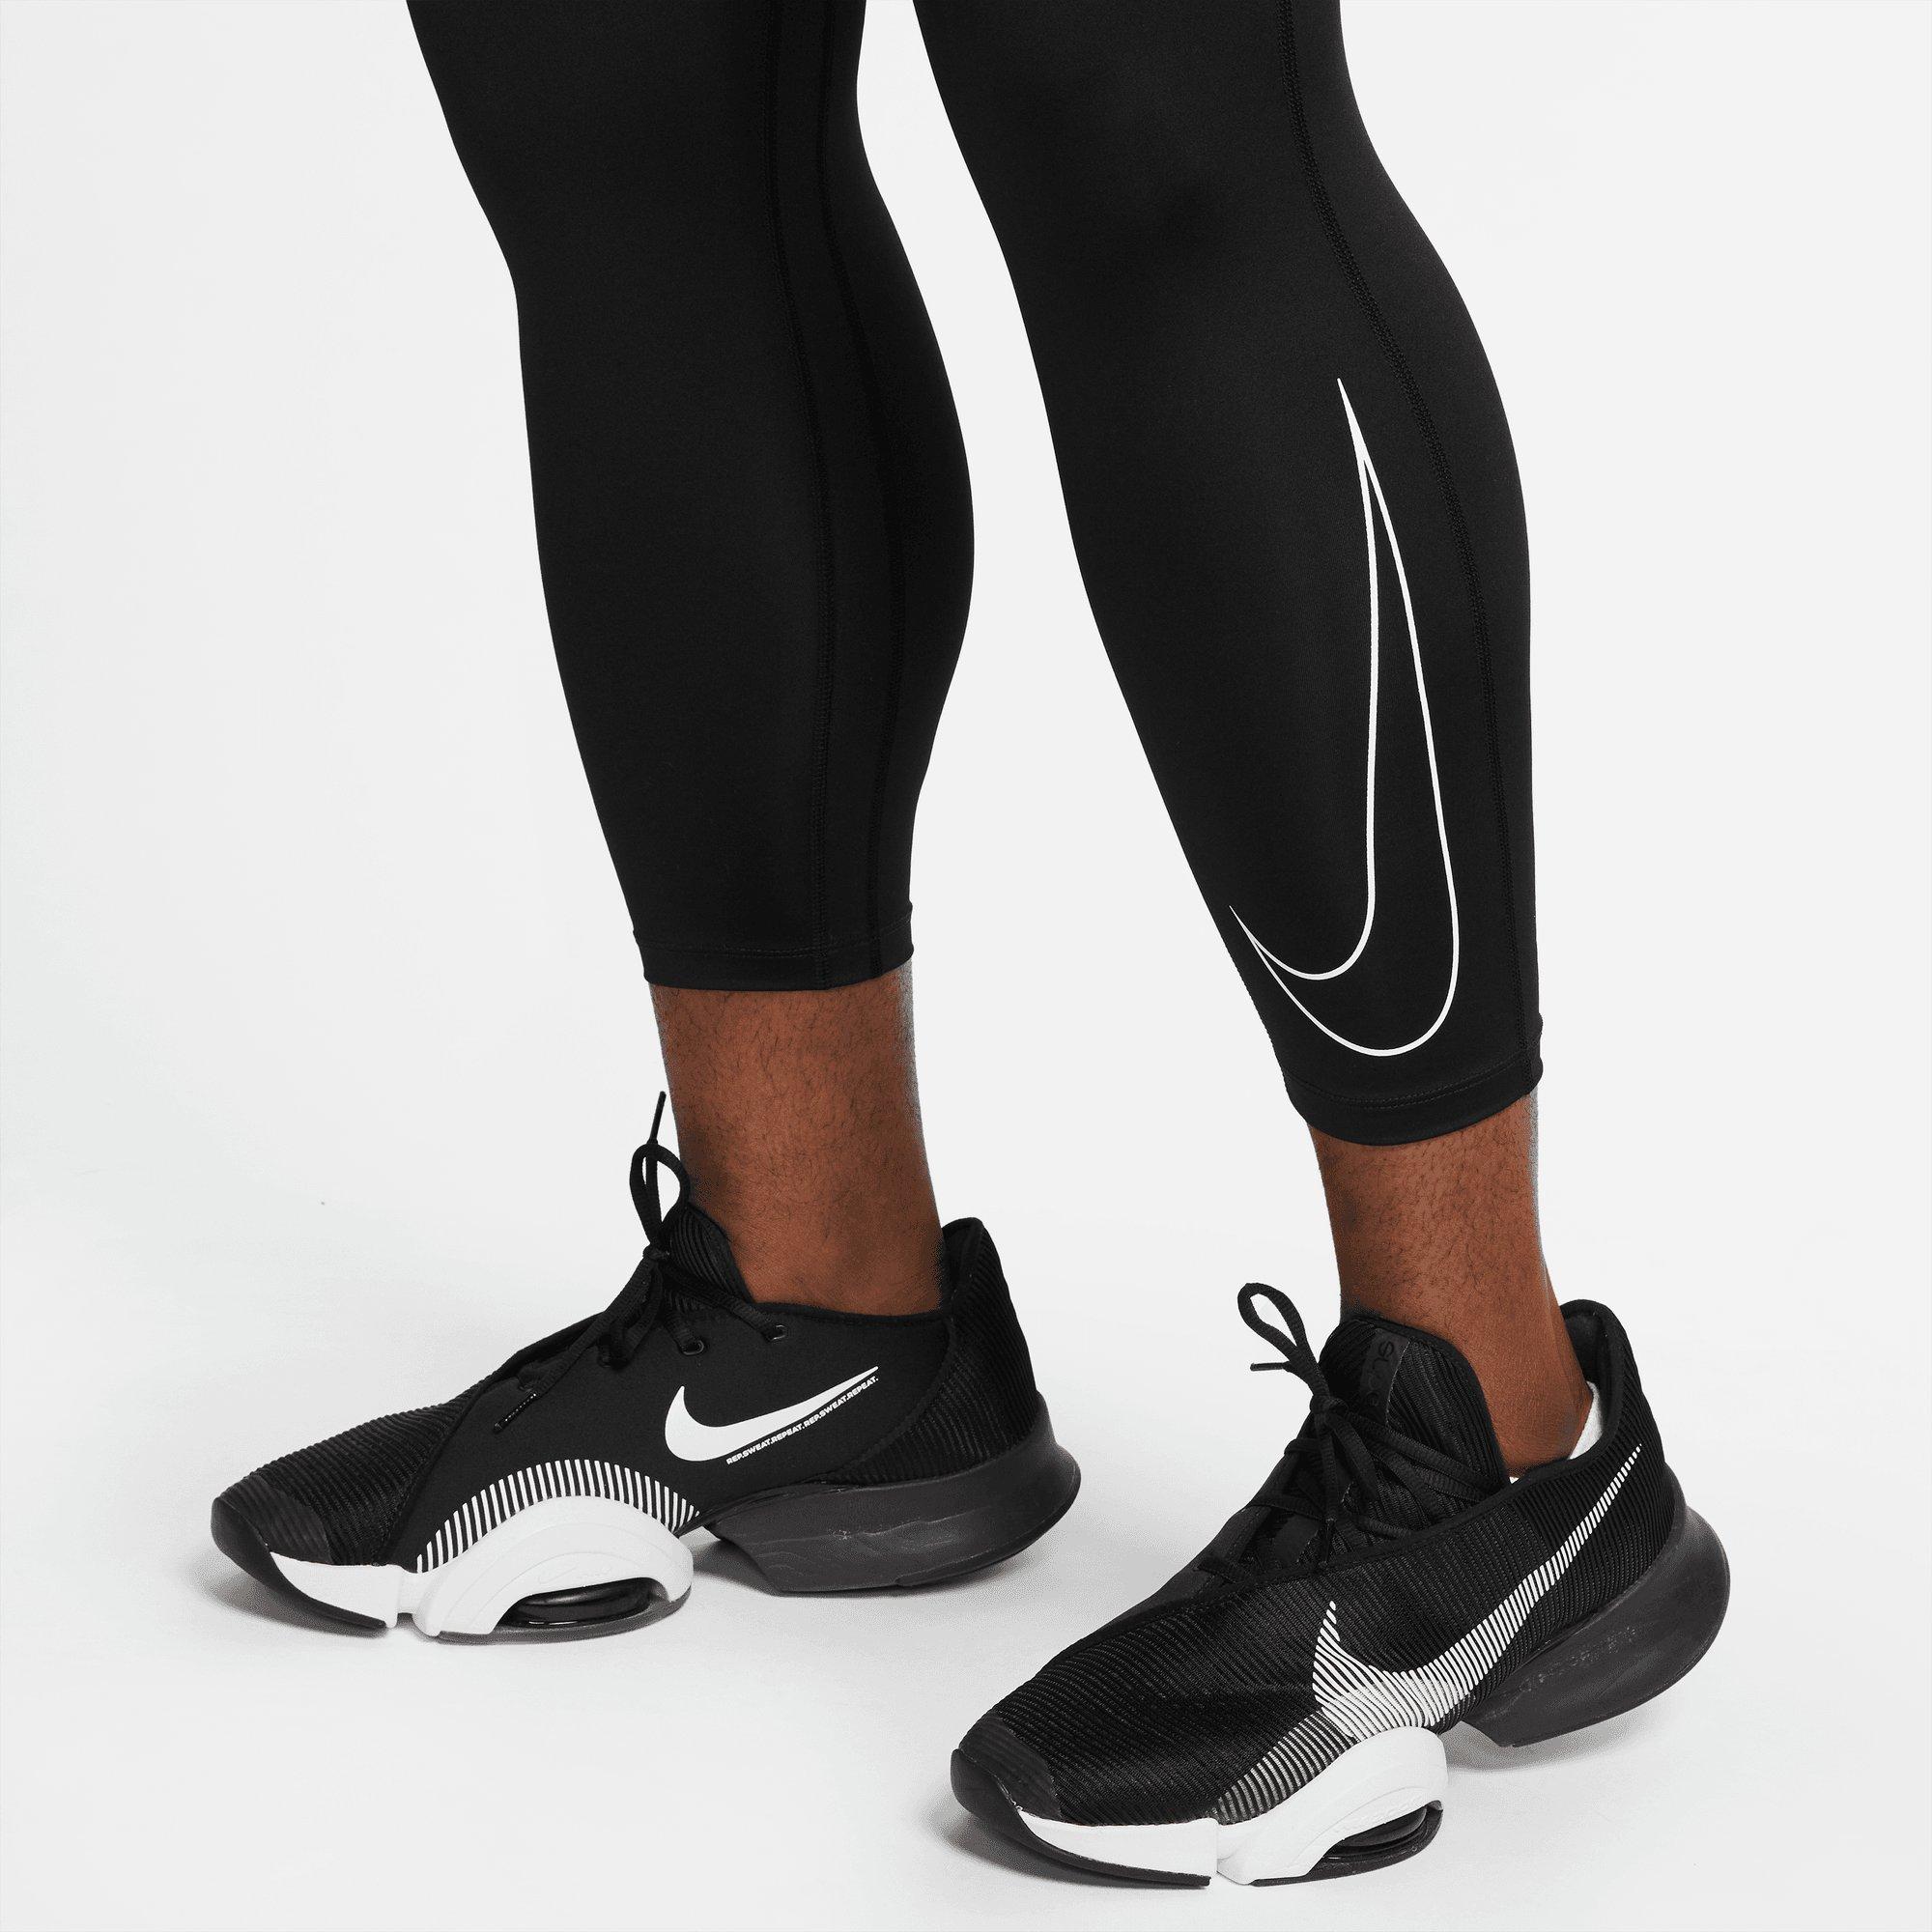 Nike Pro Dri-Fit 3/4 Tights – Apes Lab